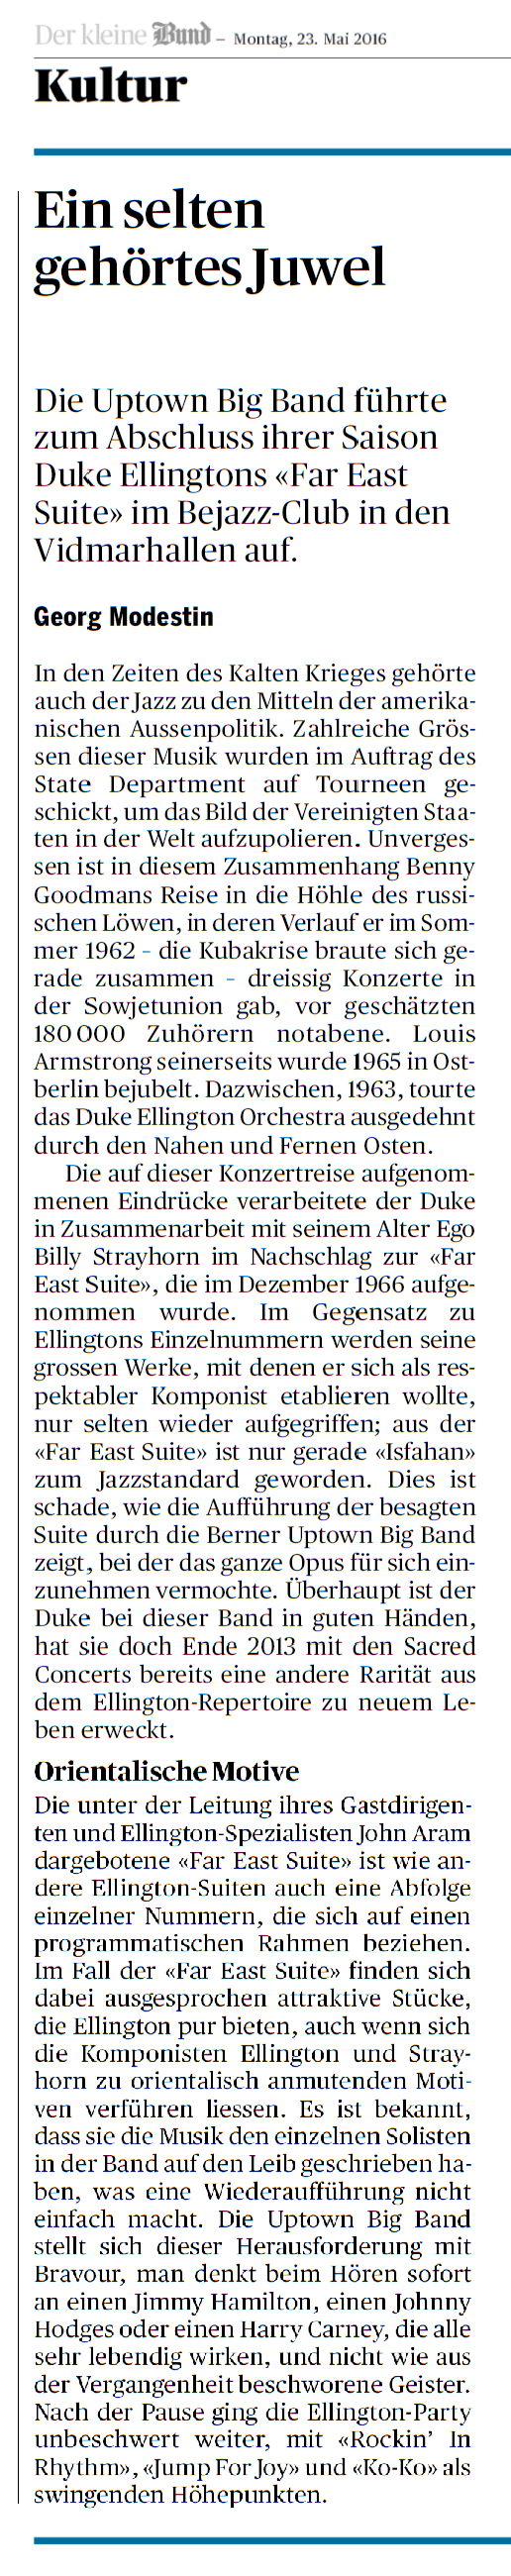 Ein selten gehörtes Juwel: Die Uptown Big Band führte zum Abschluss ihrer Saison Duke Ellingtons «Far East Suite» im Bejazz-Club in den Vidmarhallen auf. Georg Modestin, der Bund, 23. Mai 2016